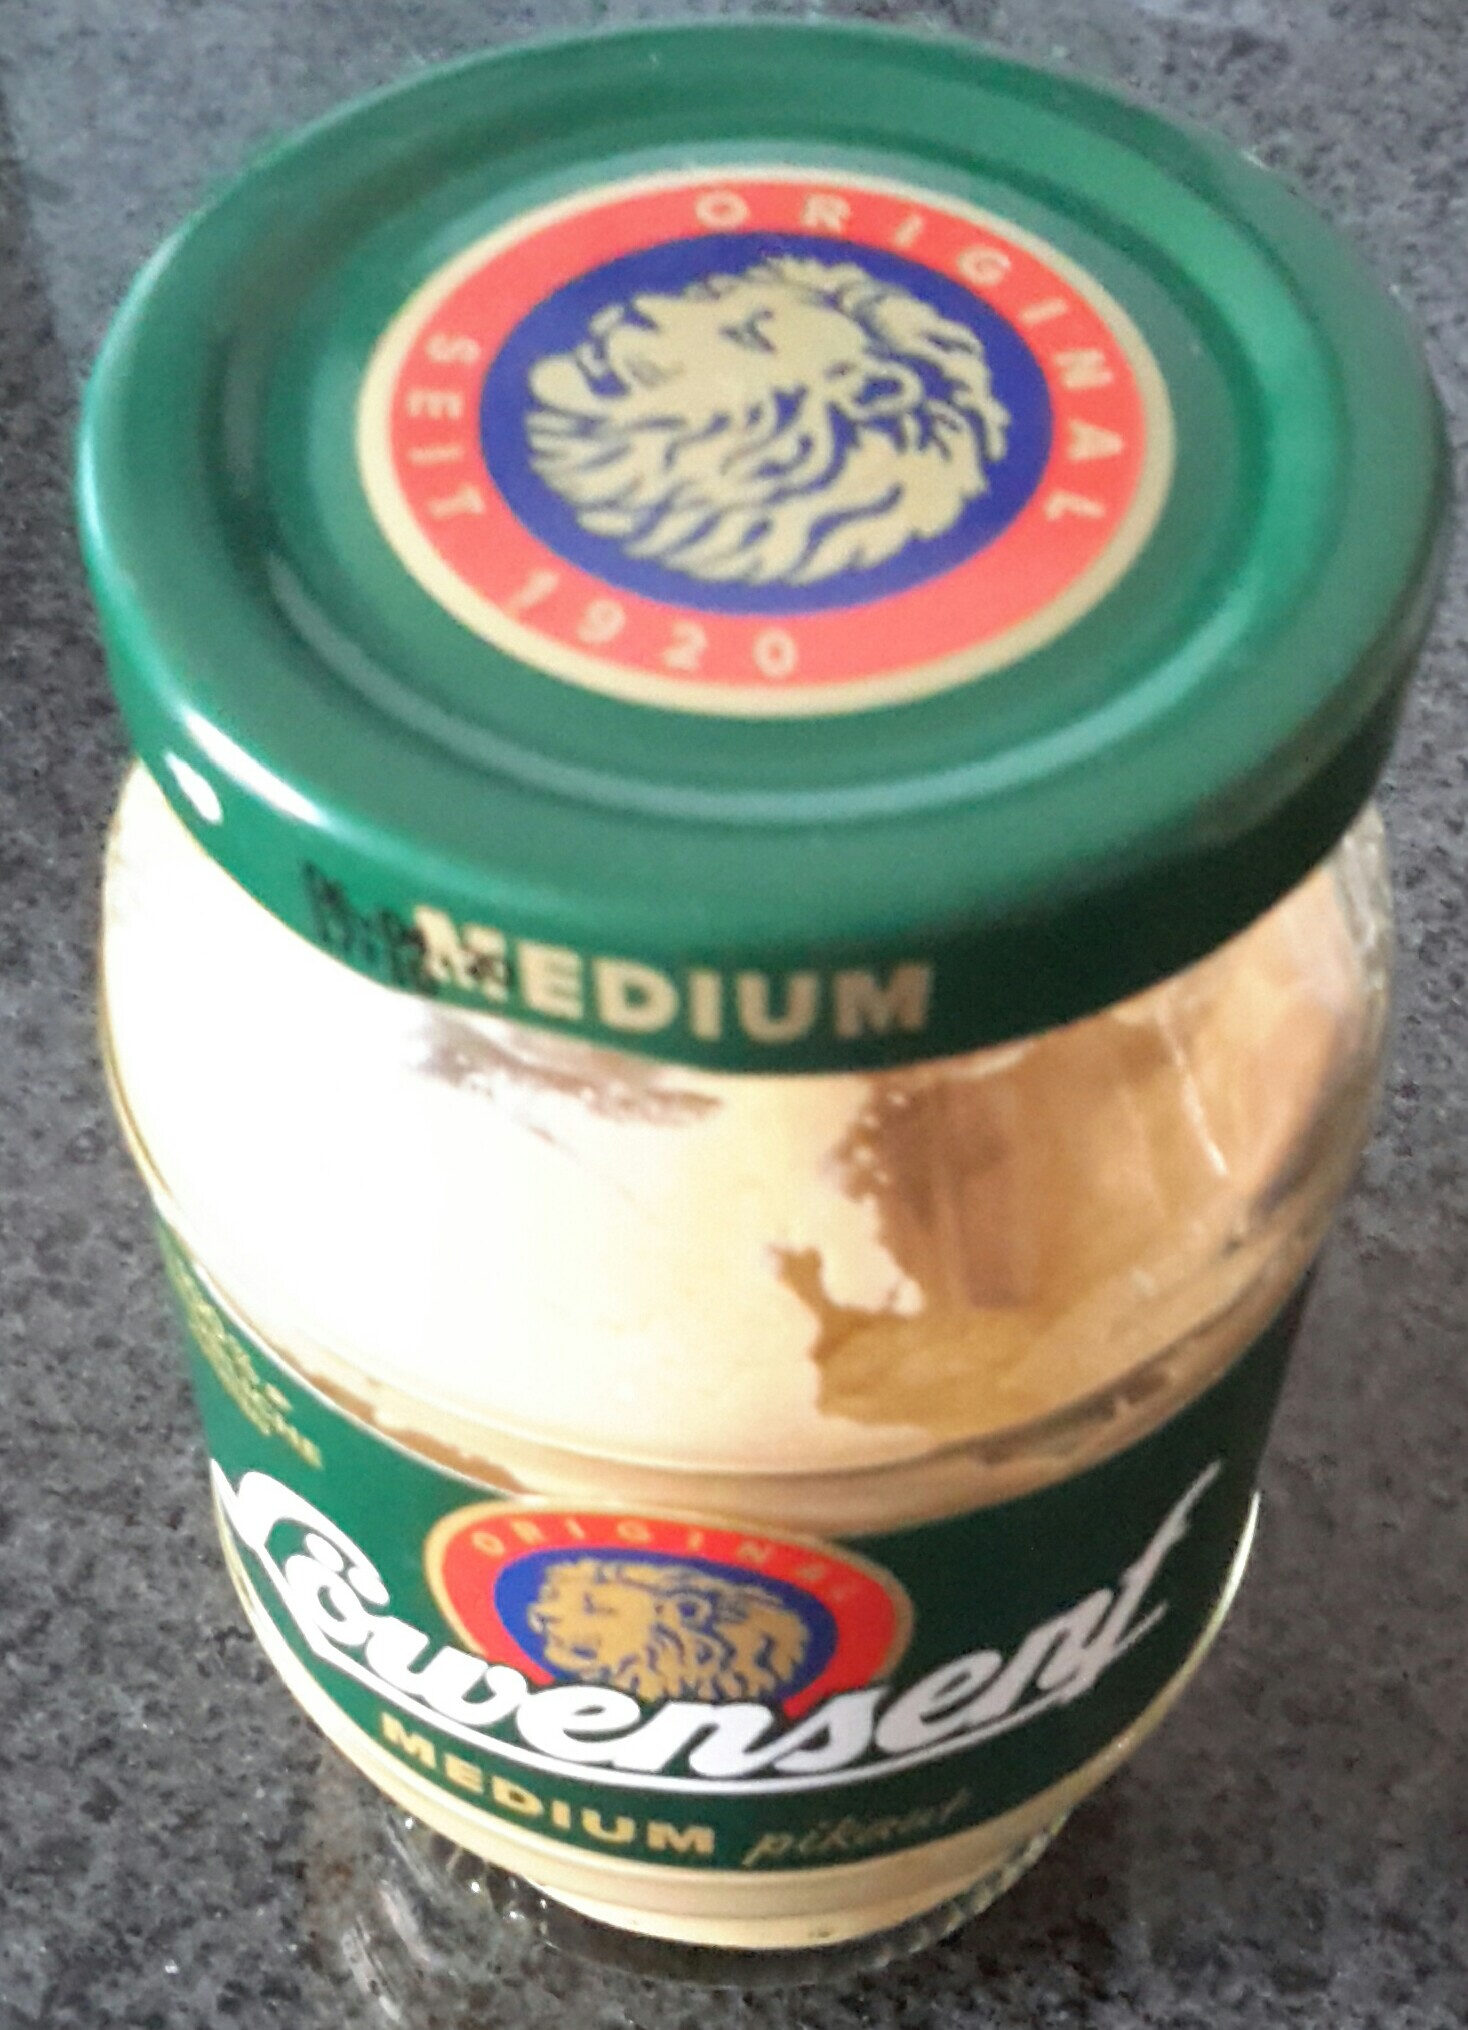 Löwen Senf Medium - Product - de